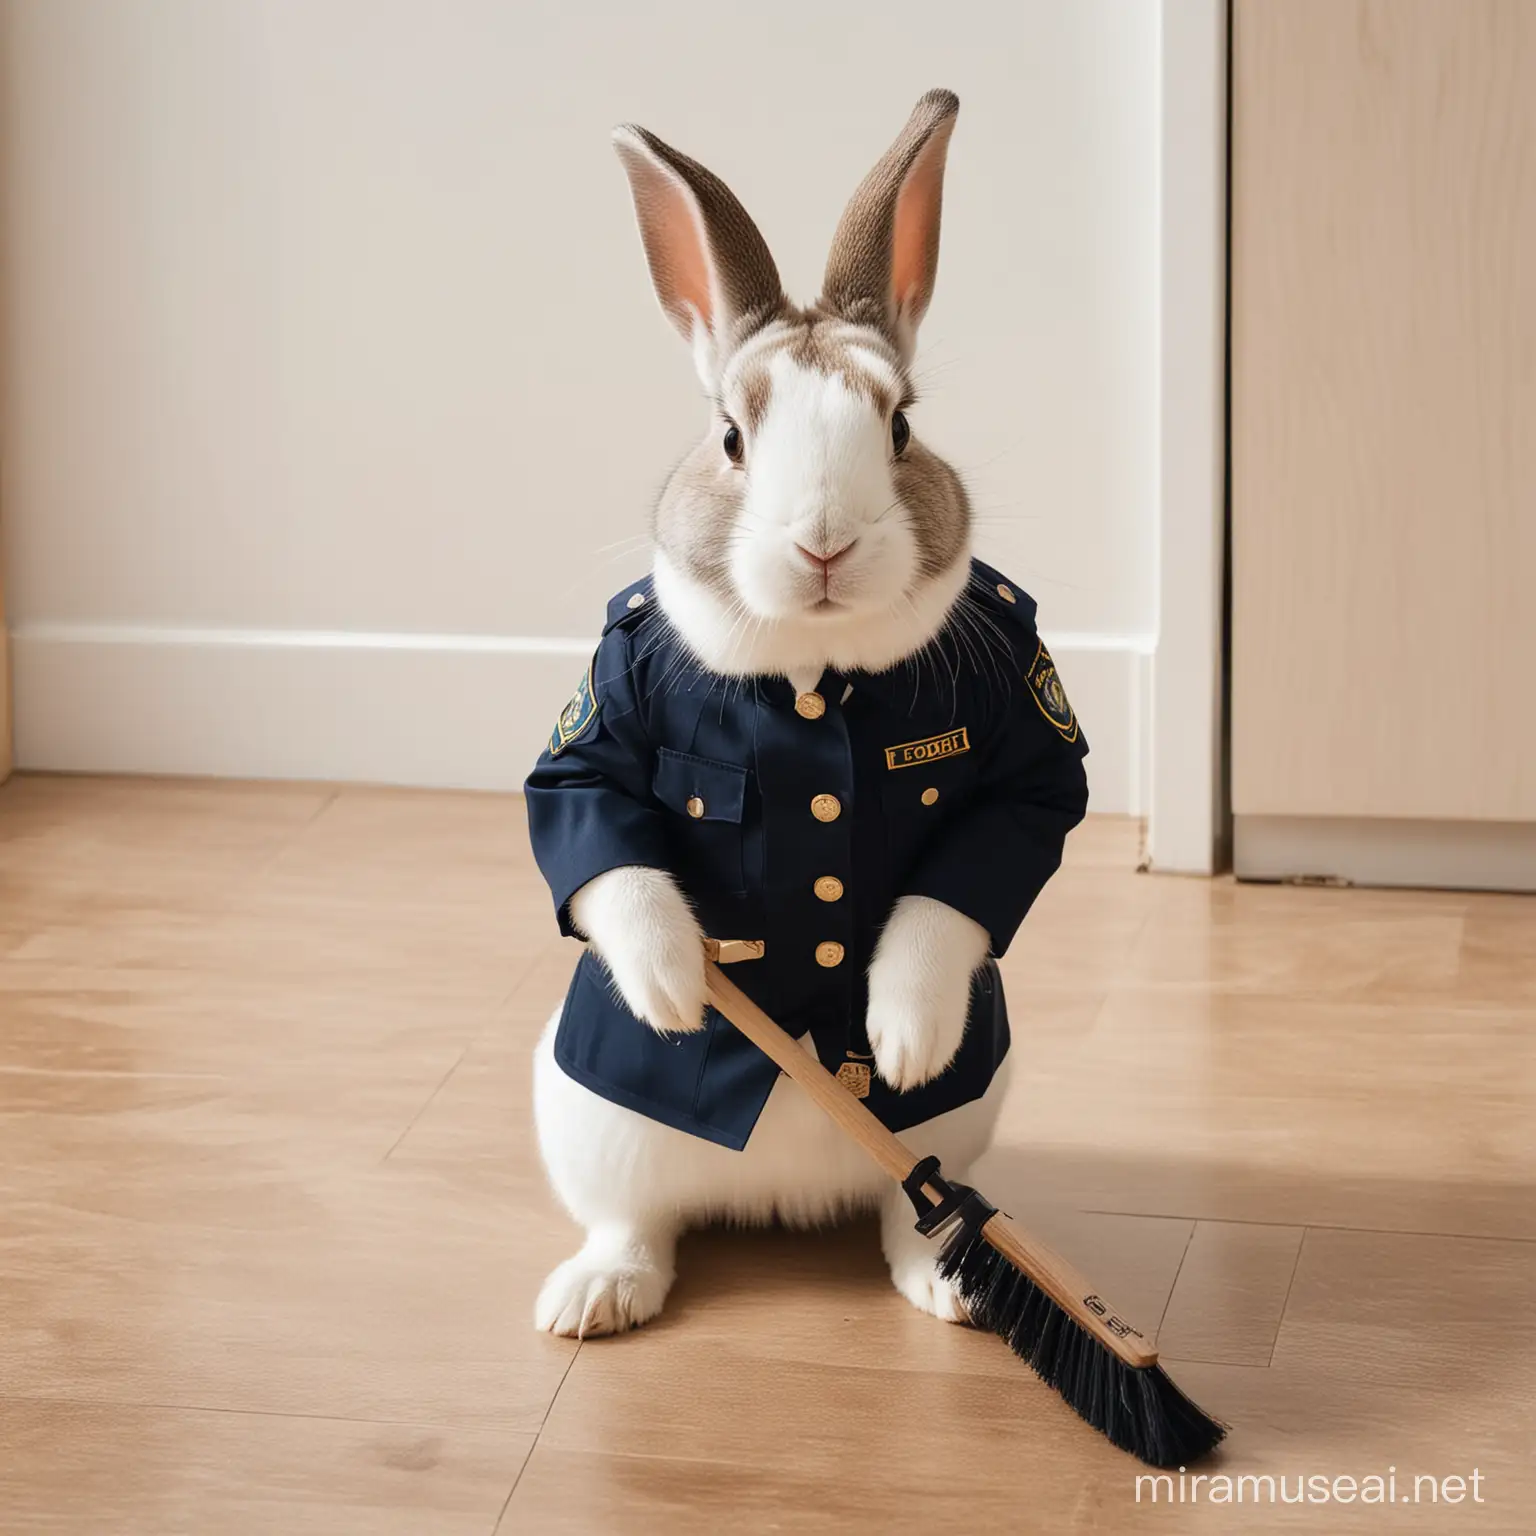 Security Rabbit Sweeping the Floor